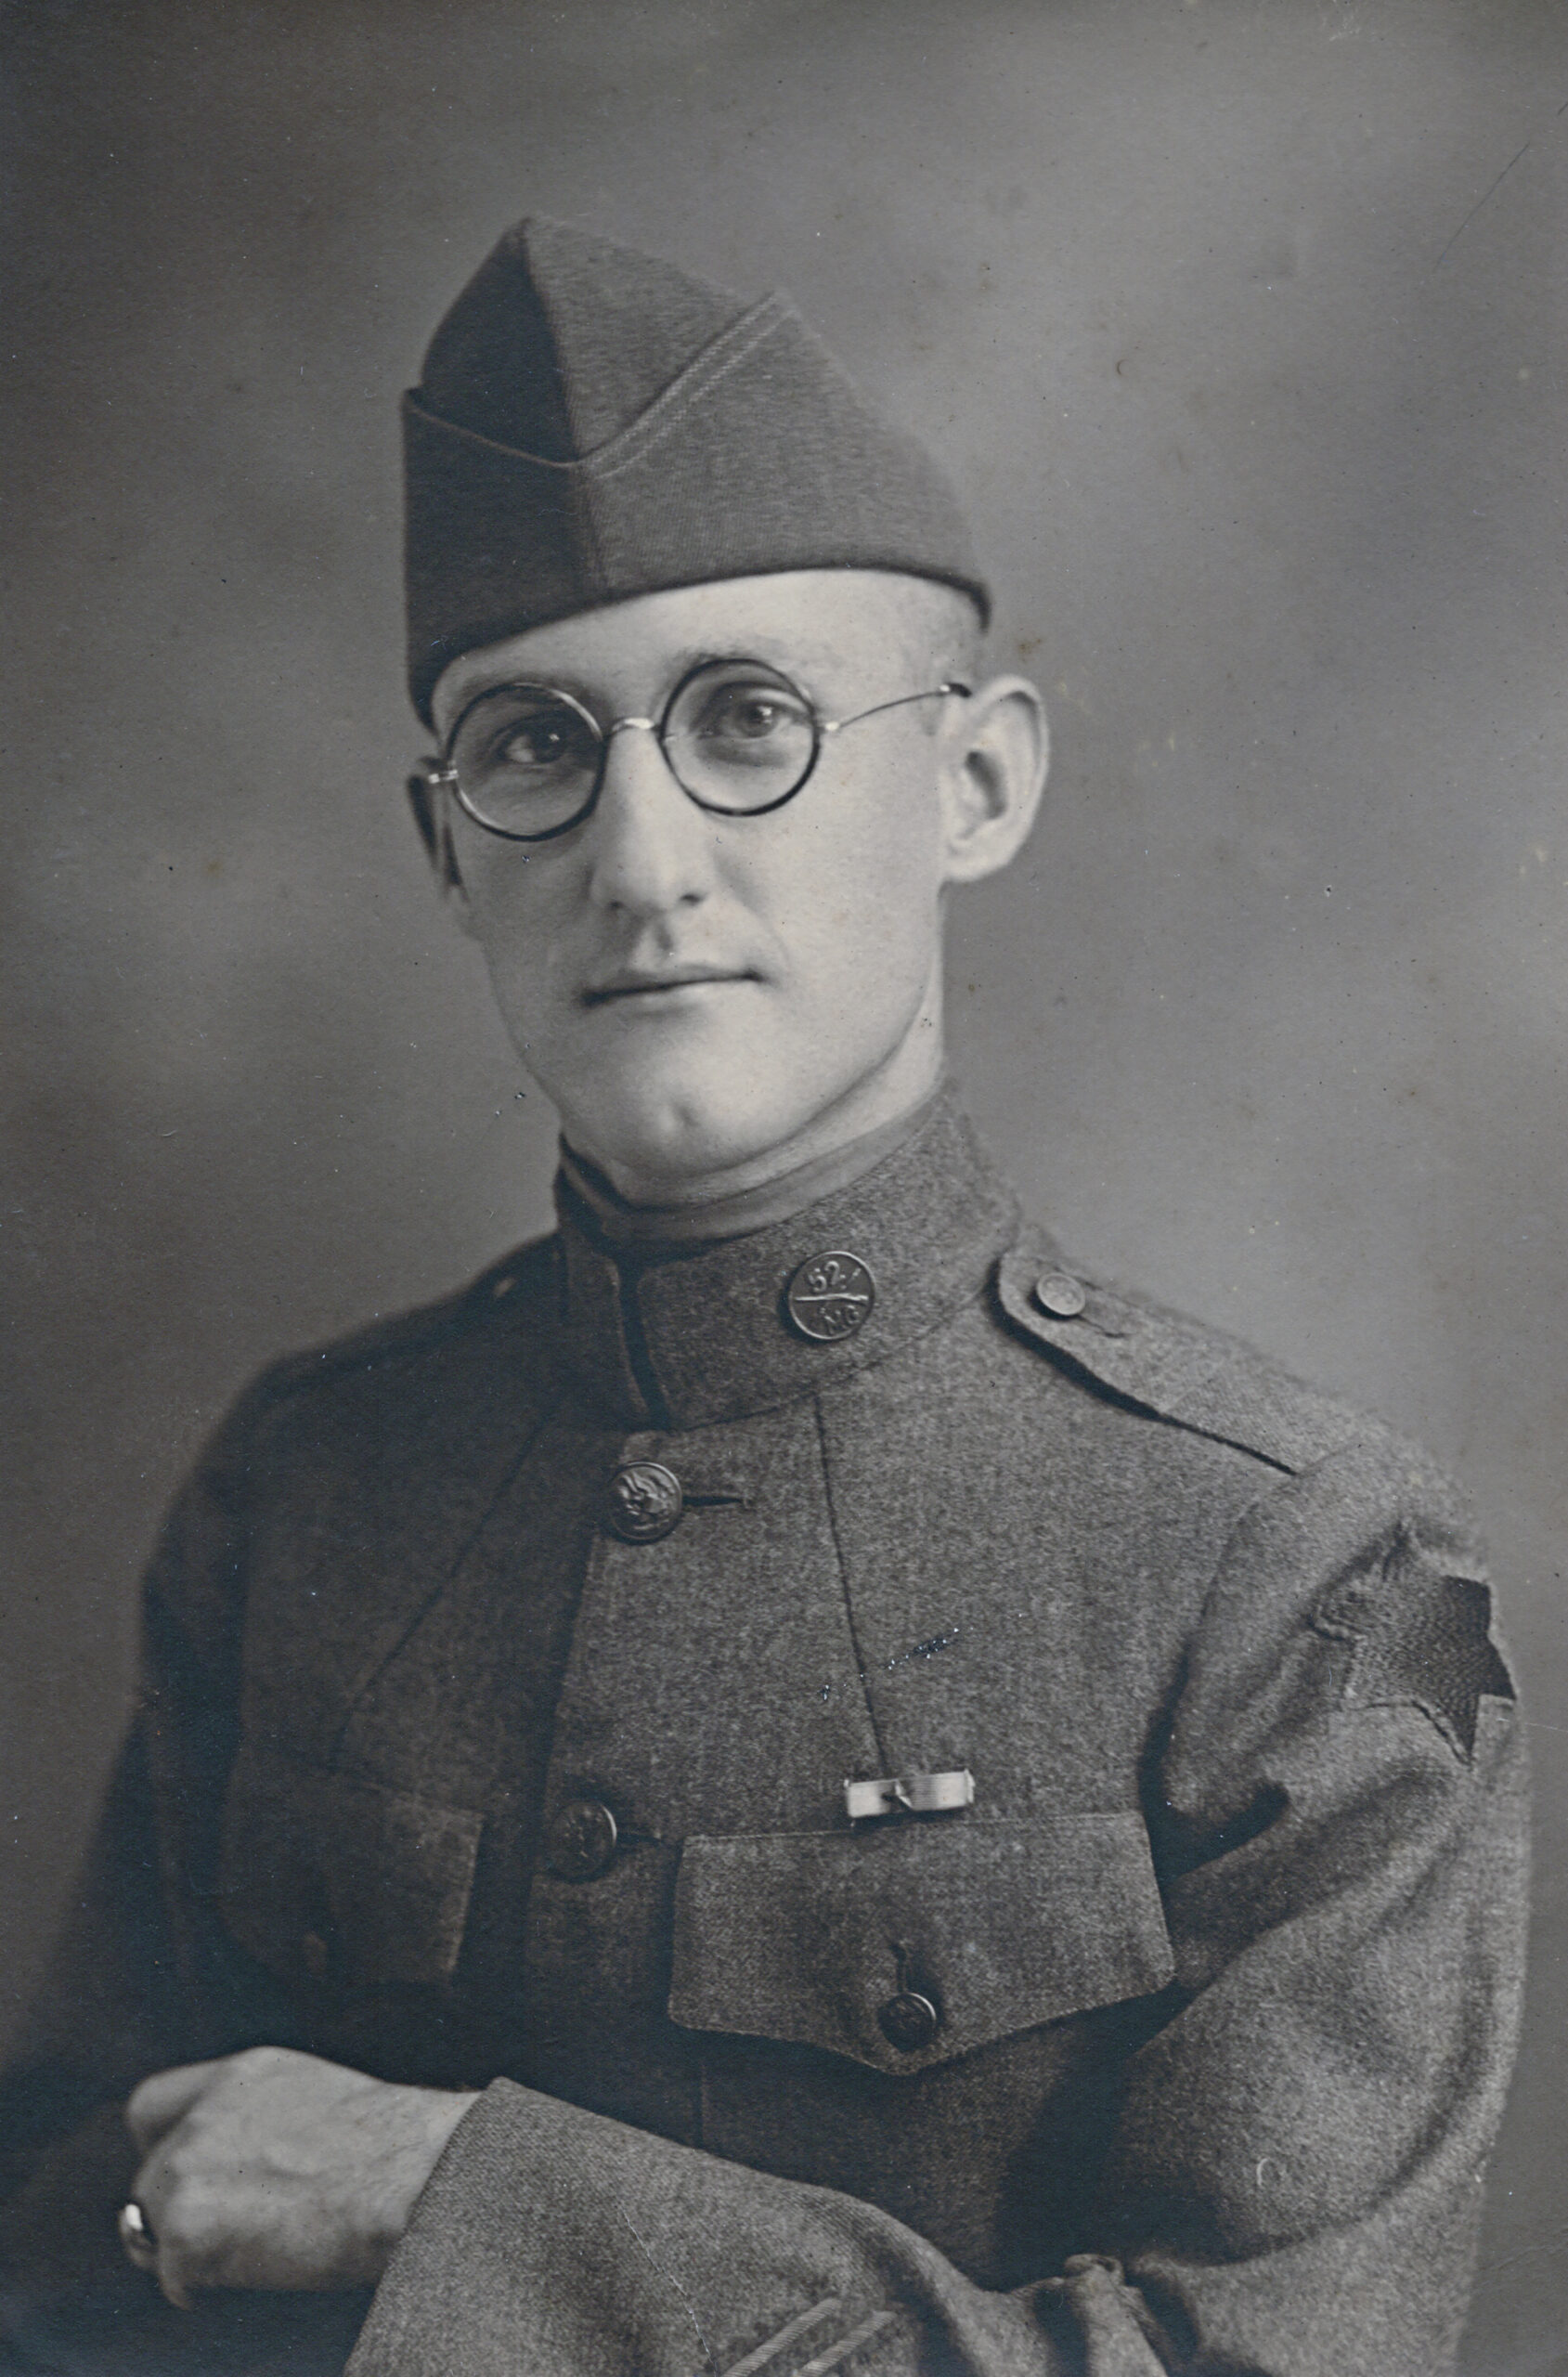 Lee B O’Neal – USA WWI